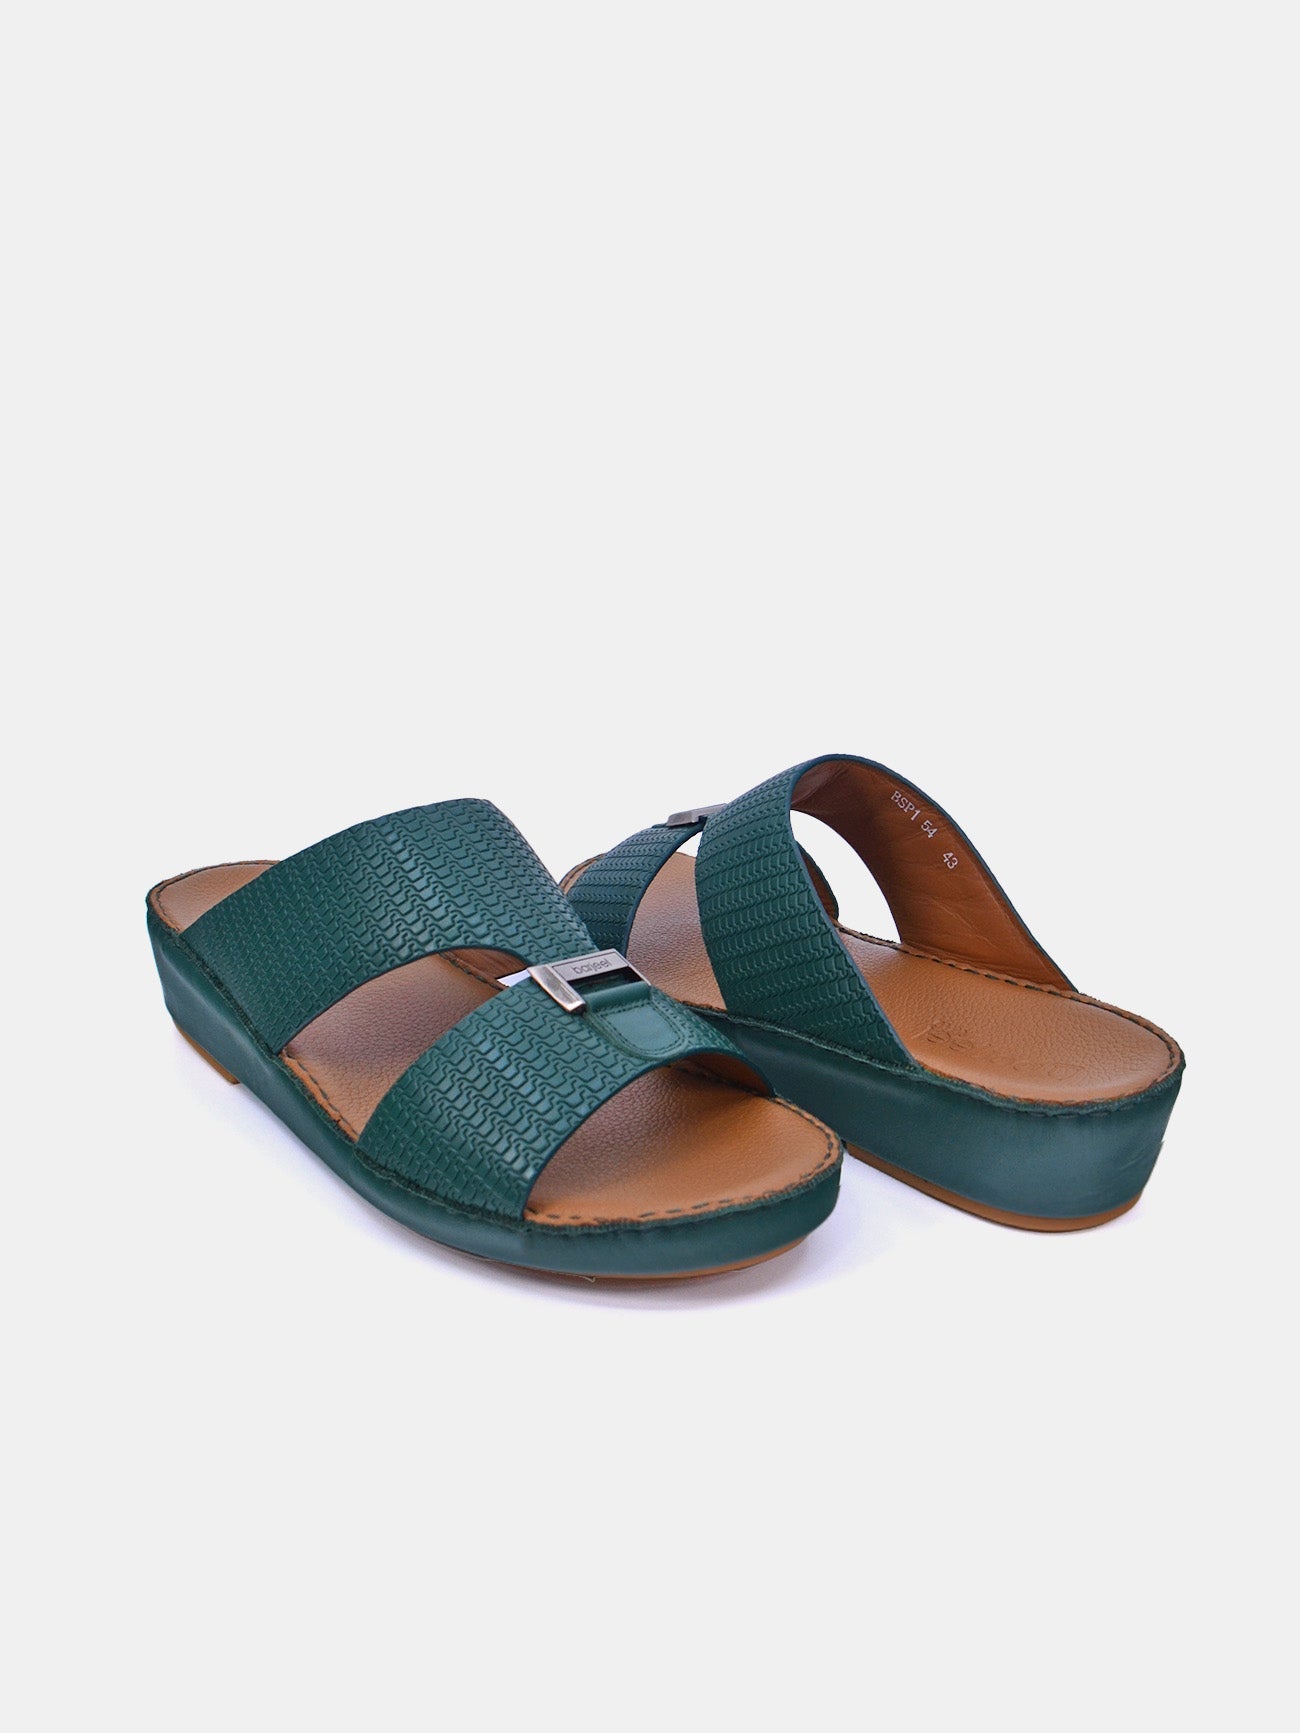 Barjeel Uno BSP1-54 Boys Arabic Sandals #color_Green